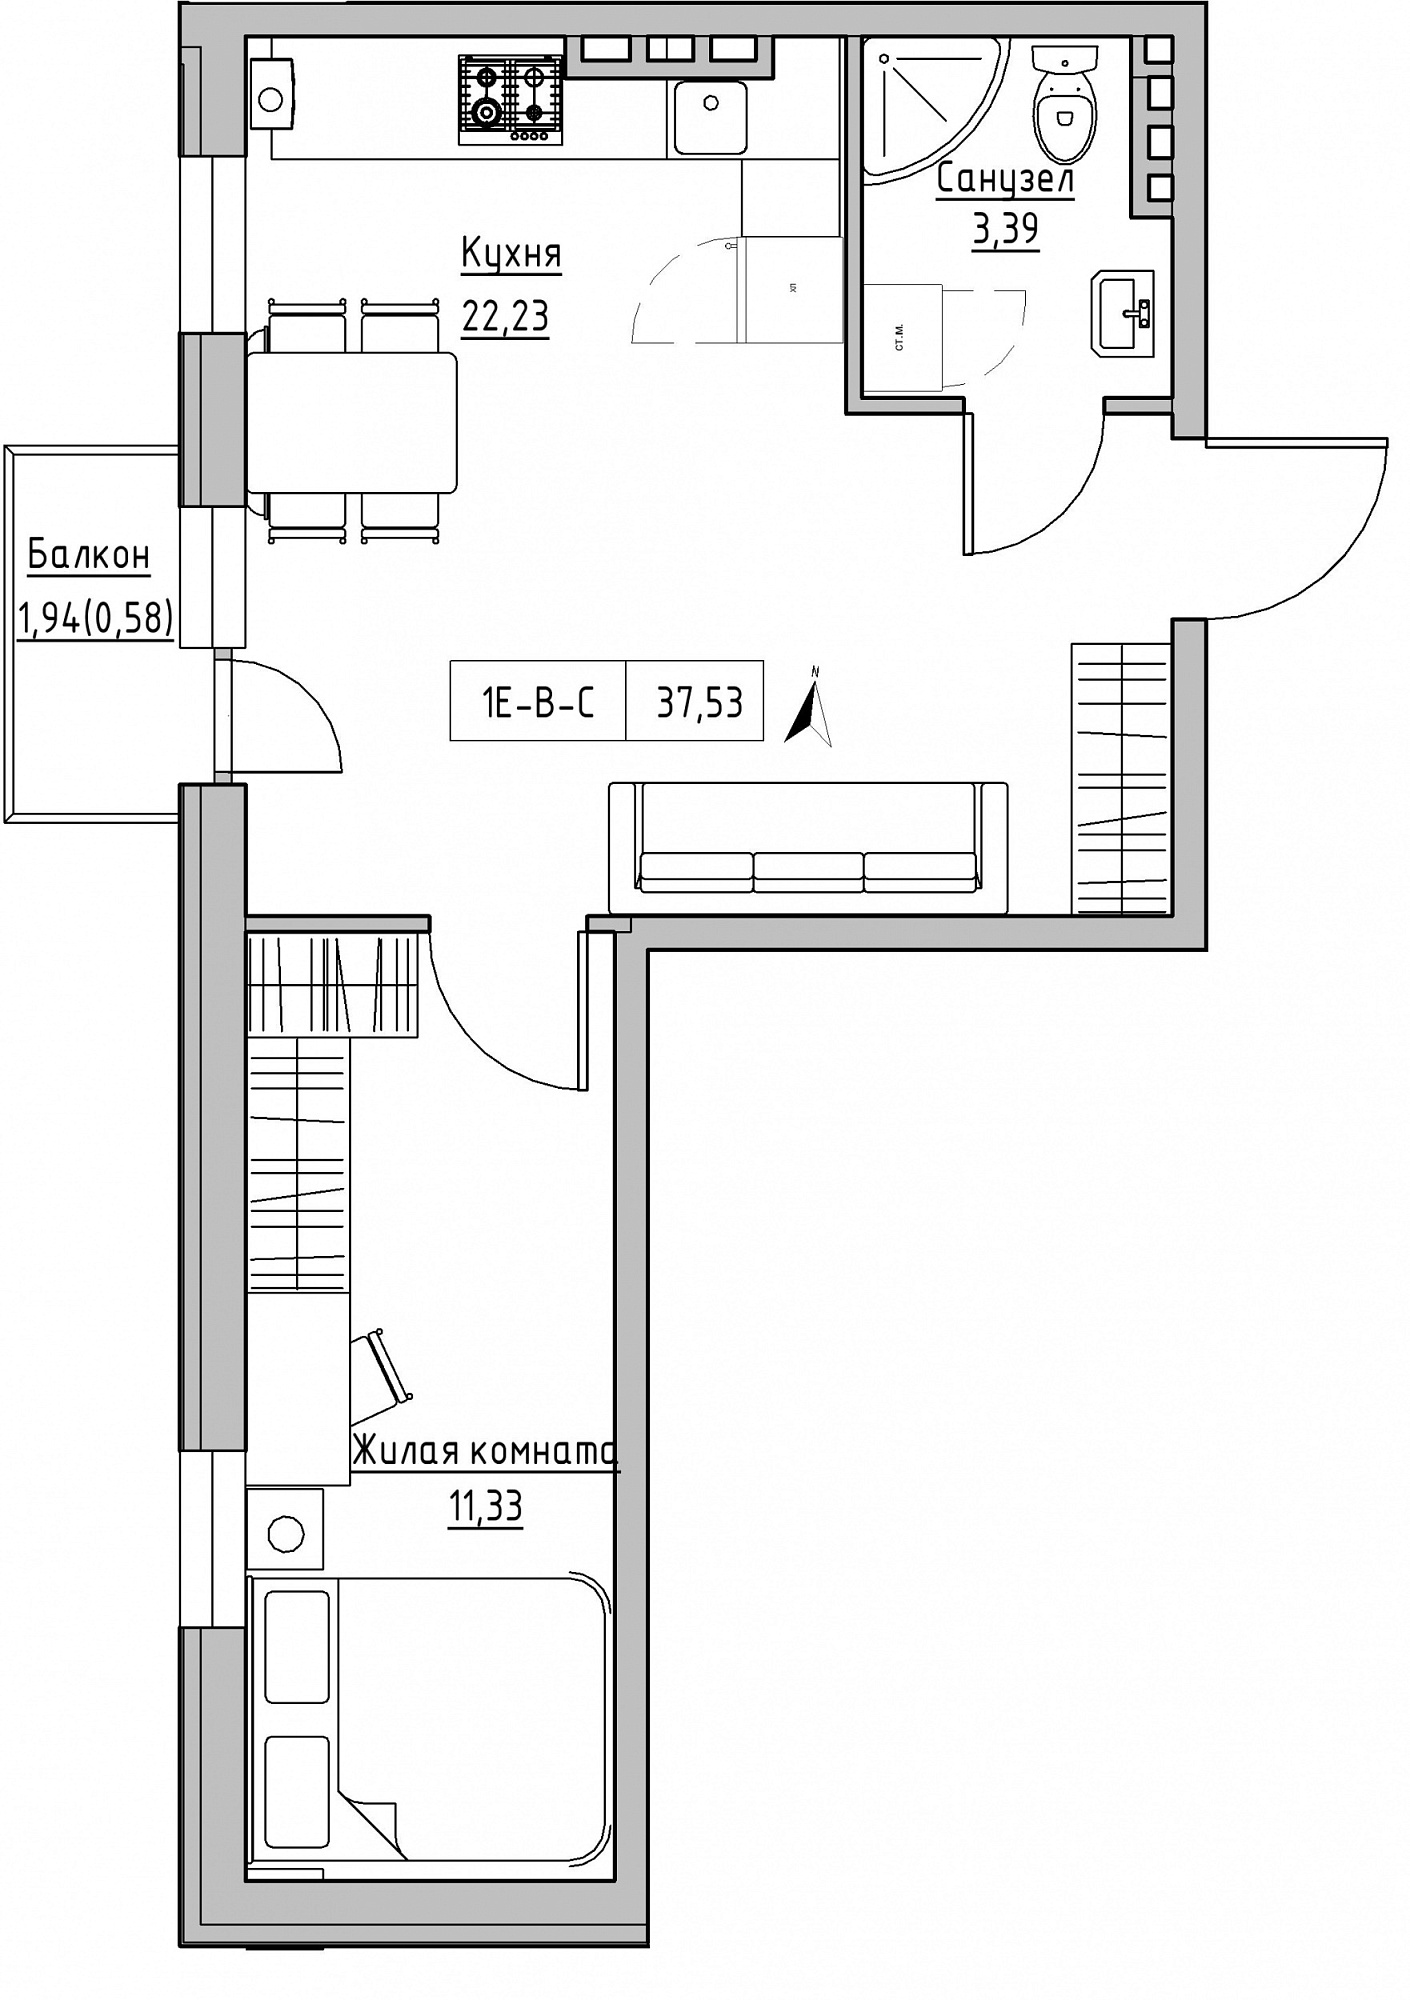 Планировка 1-к квартира площей 37.53м2, KS-024-03/0010.